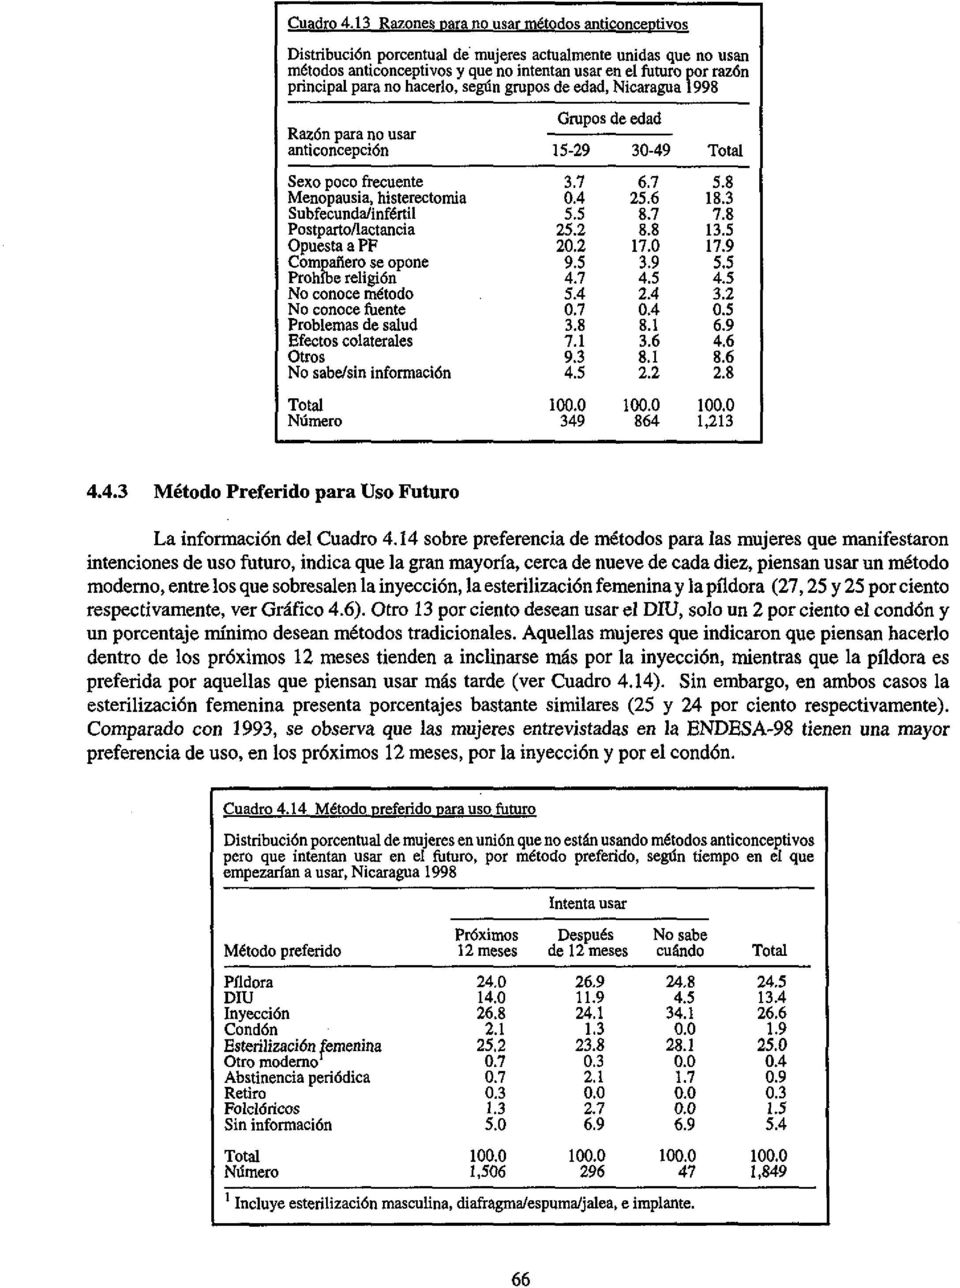 no hacerlo, según grupos de edad, Nicaragua 1998 Grupos de edad Razón para no usar anticoncepción 15-29 30-49 Total Sexo poco frecuente 3.7 6.7 5.8 Menopausia, histerectomia 0.4 25.6 18.